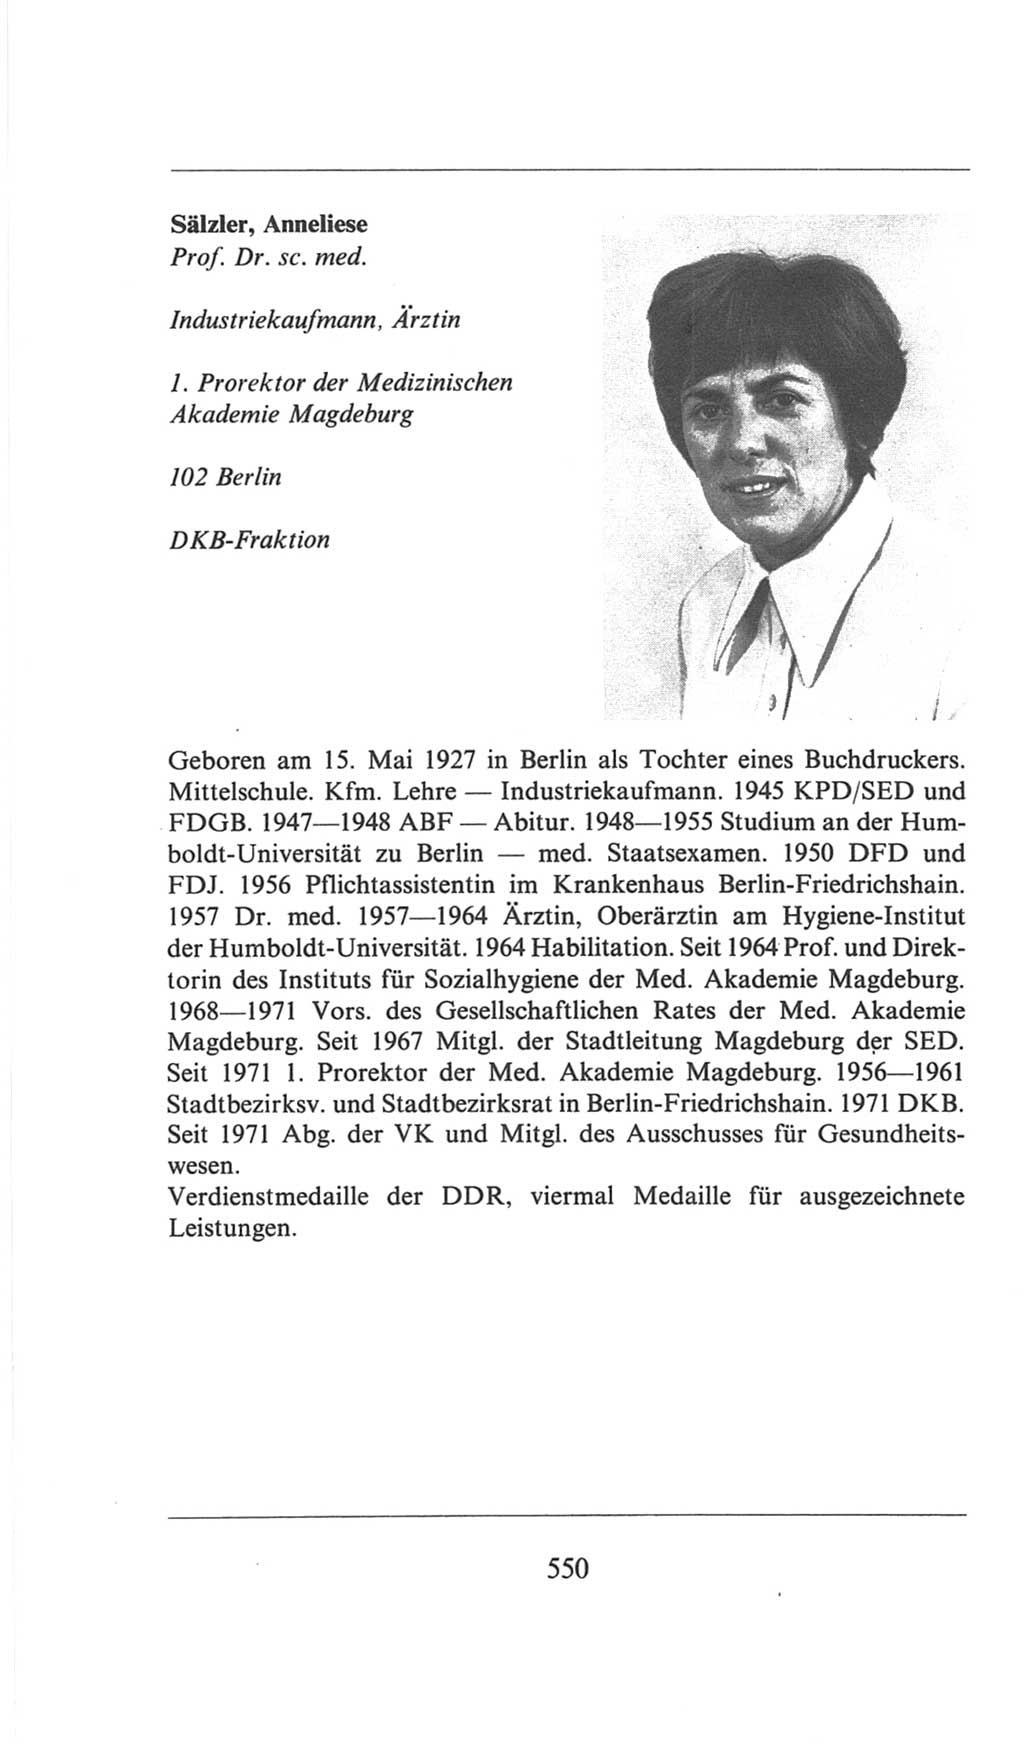 Volkskammer (VK) der Deutschen Demokratischen Republik (DDR), 6. Wahlperiode 1971-1976, Seite 550 (VK. DDR 6. WP. 1971-1976, S. 550)